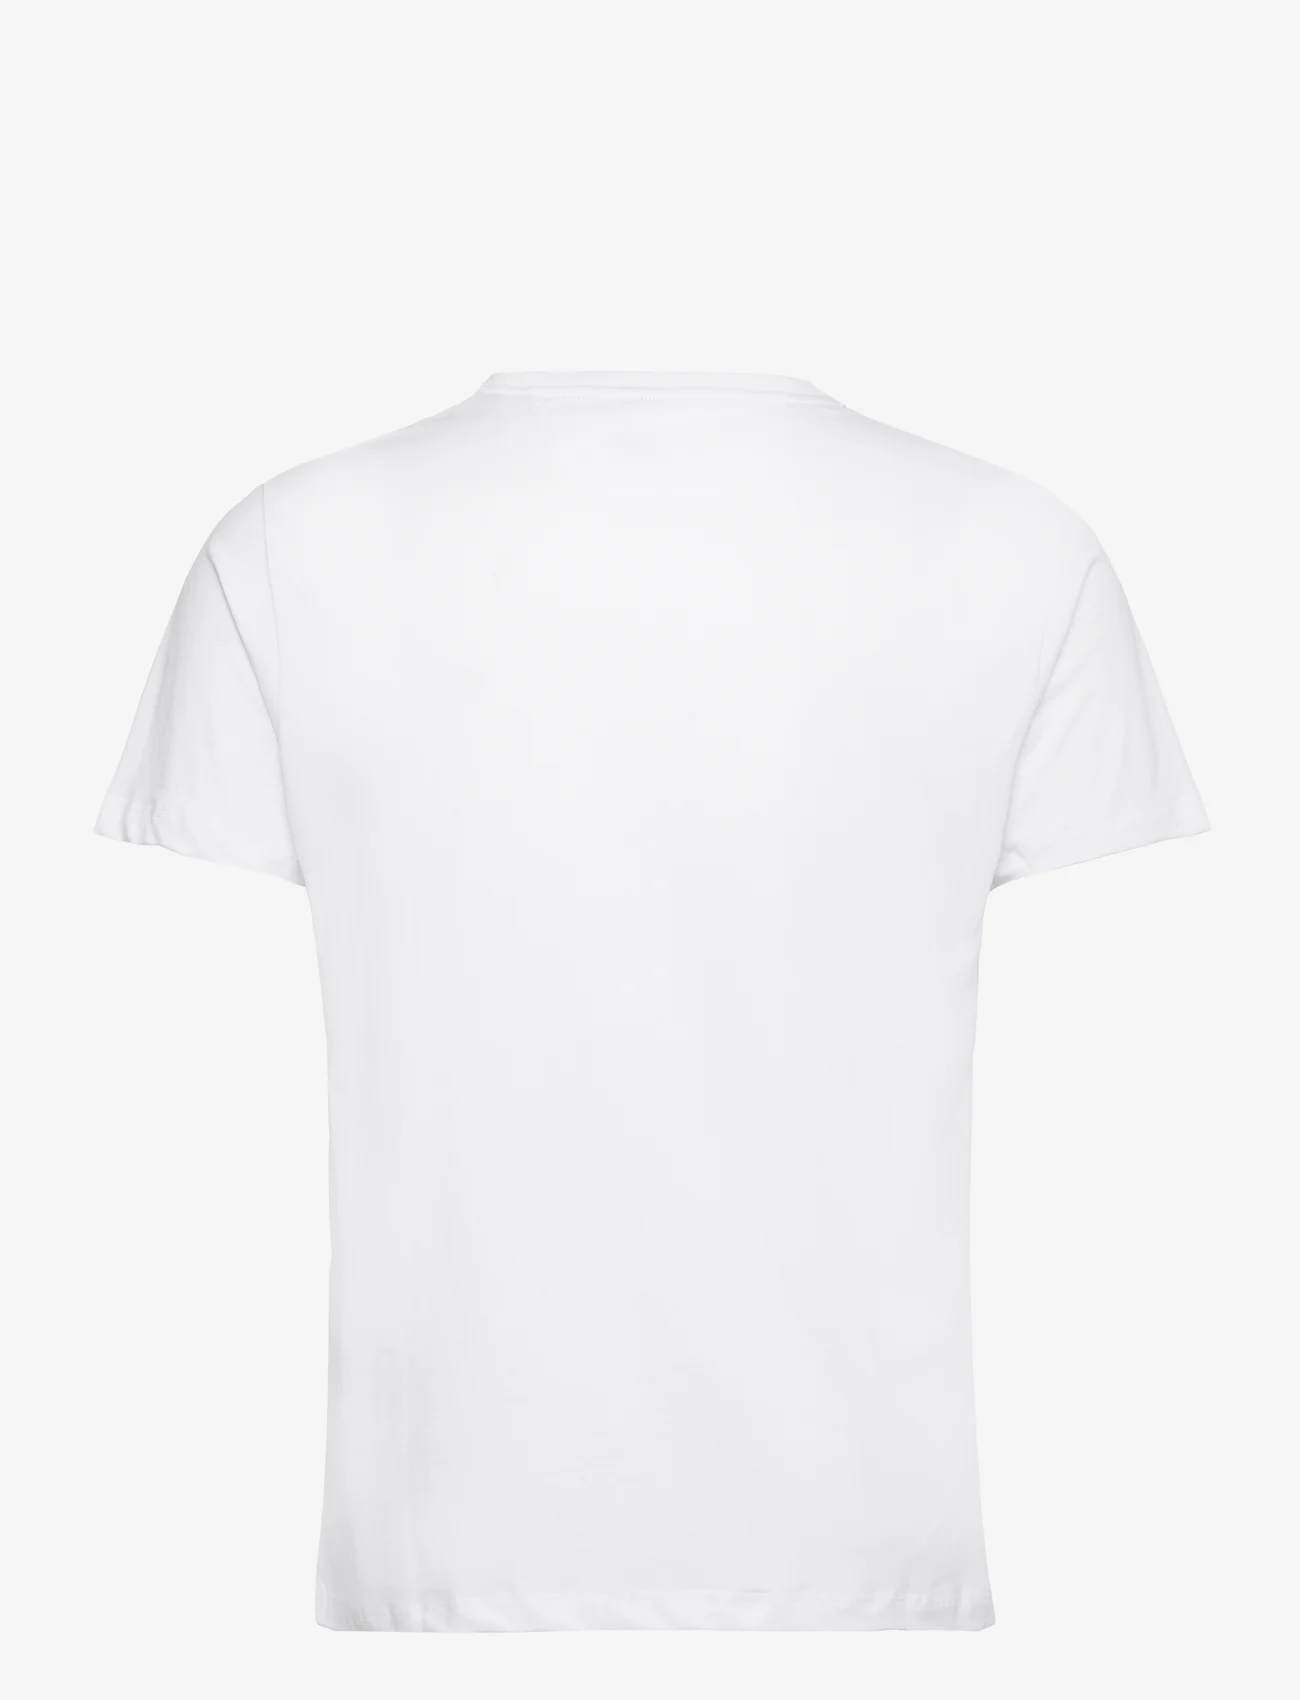 Hackett London - PIMA COTTON TEE - podstawowe koszulki - white - 1